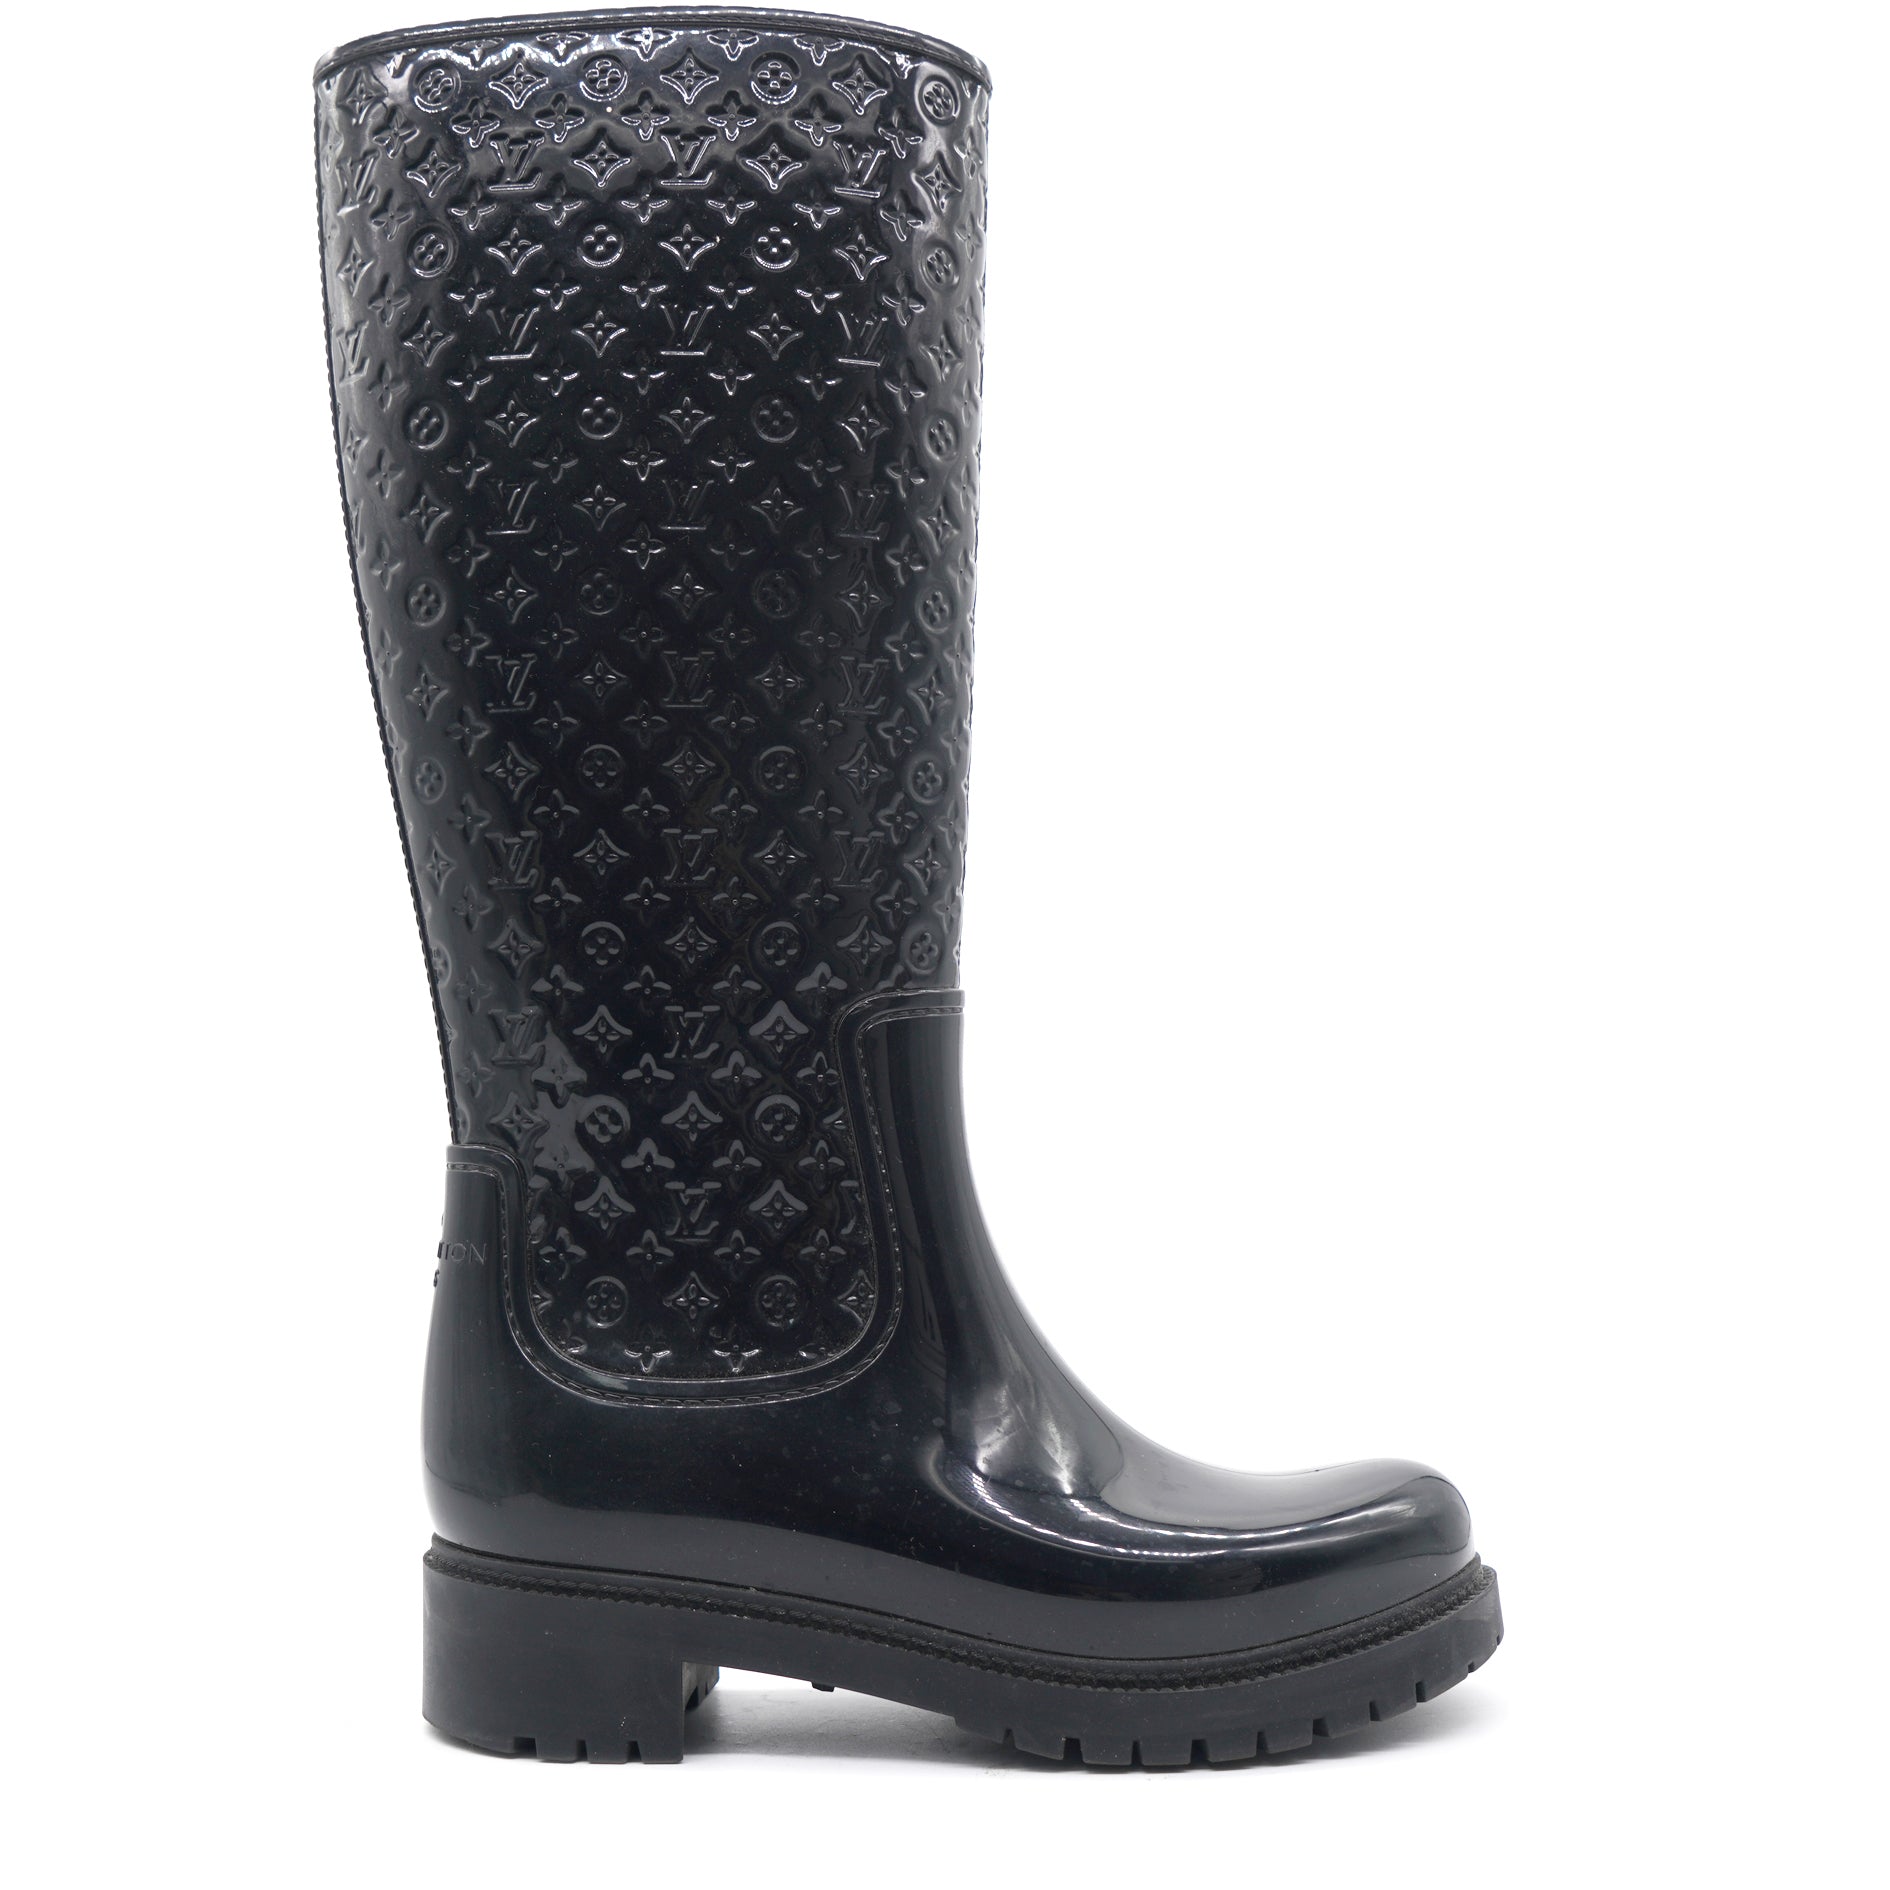 Drops wellington boots Louis Vuitton Black size 39 EU in Rubber - 28003886